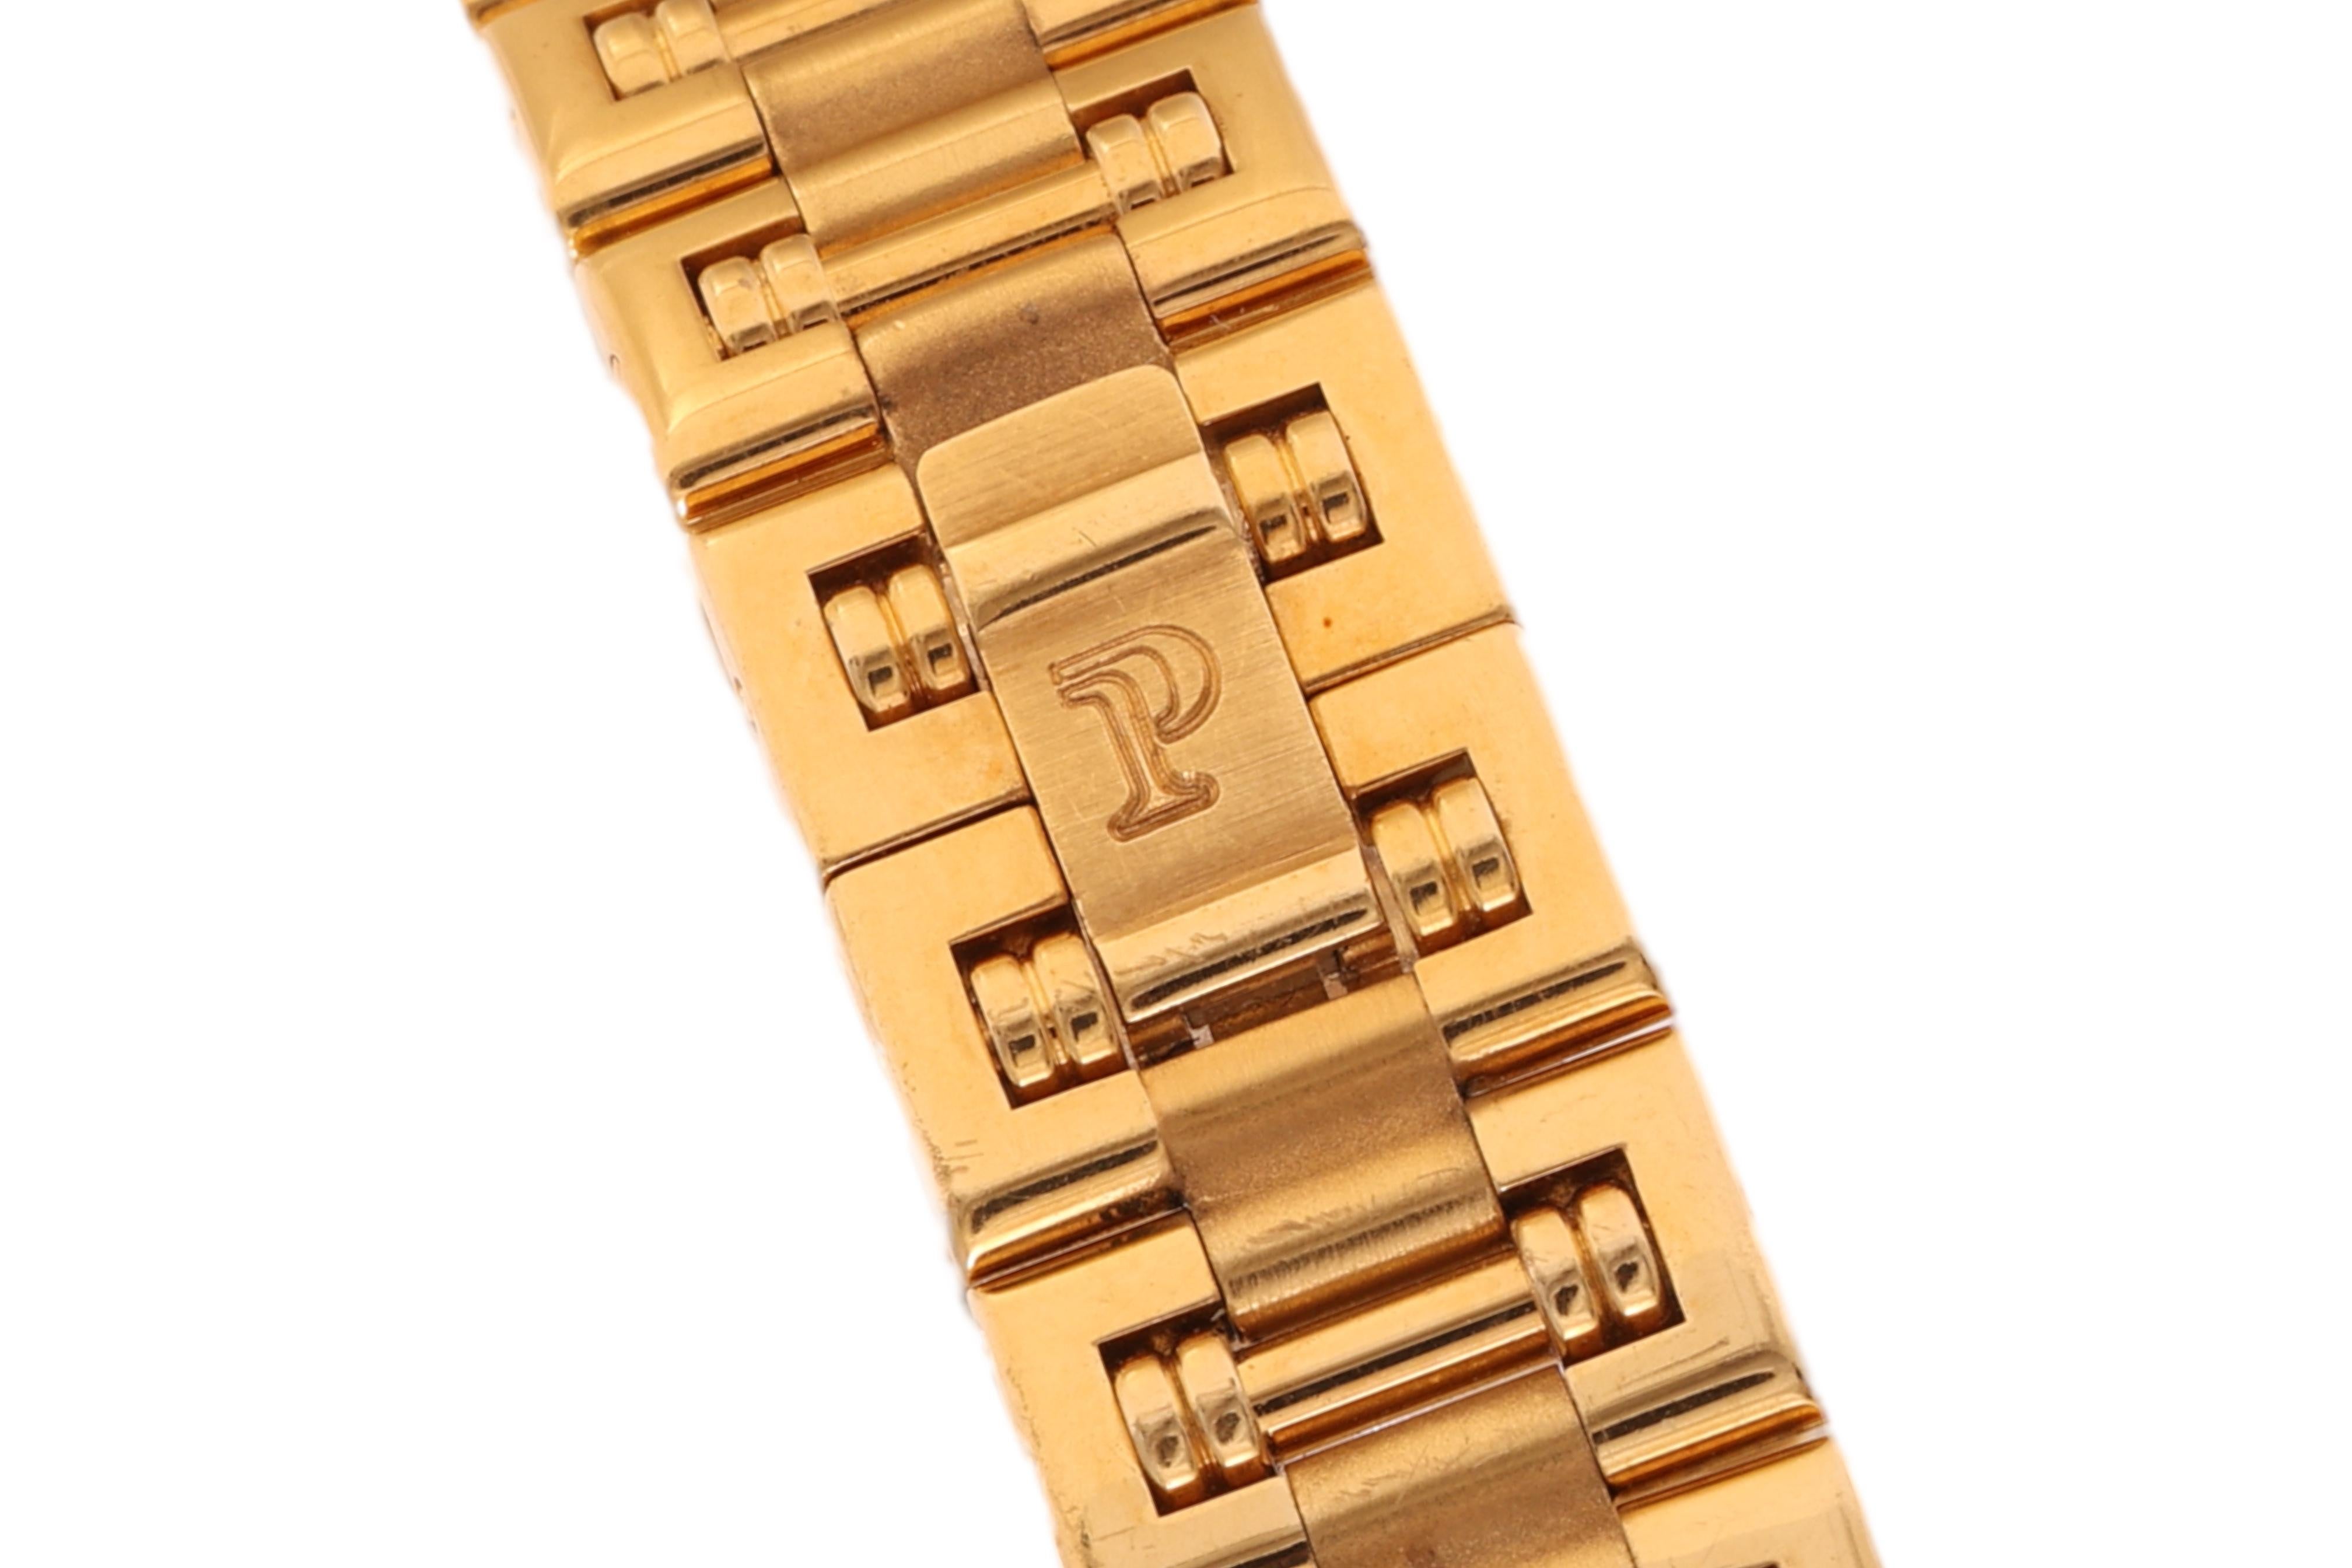 Vintage Ladies 18kt Gold Piaget Dancer Diamonds Wrist Watch, Quartz , Diam 23 mm For Sale 1